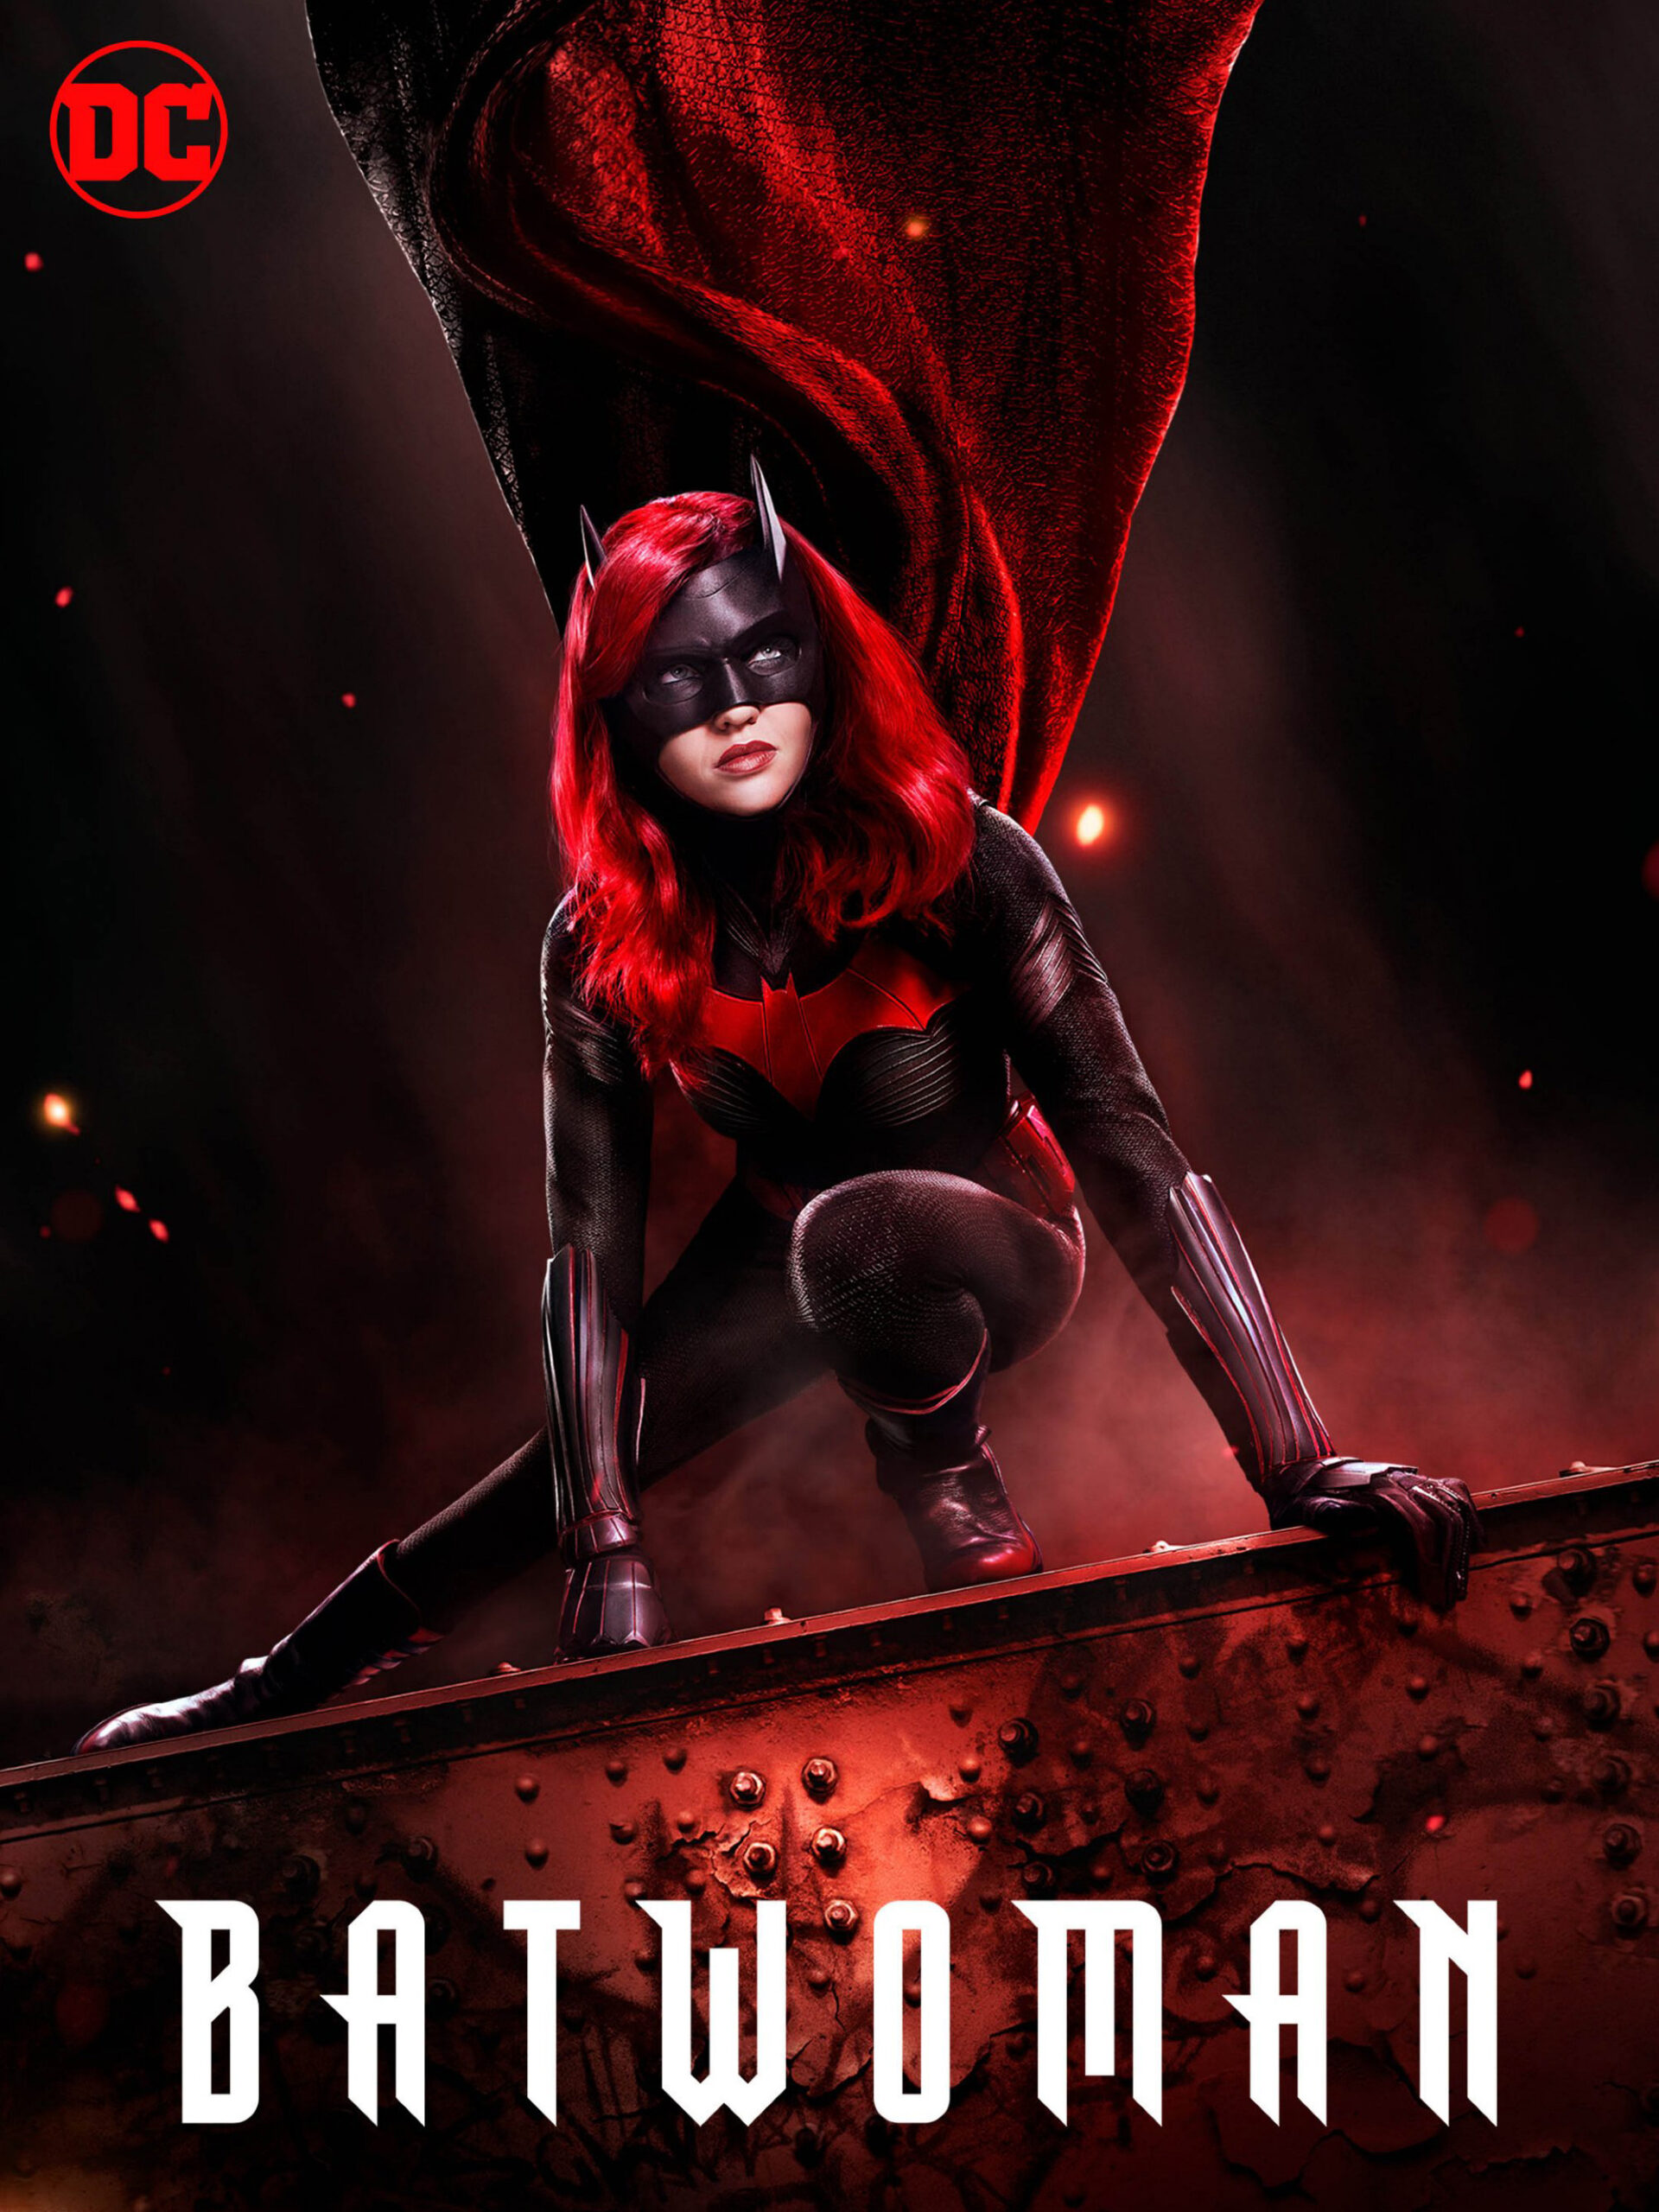 ดูหนังออนไลน์ฟรี Batwoman Season 1 (2019) EP.16 แบทวูแมน ซีซั่น 1 ตอนที่ 16 (Soundtrack)